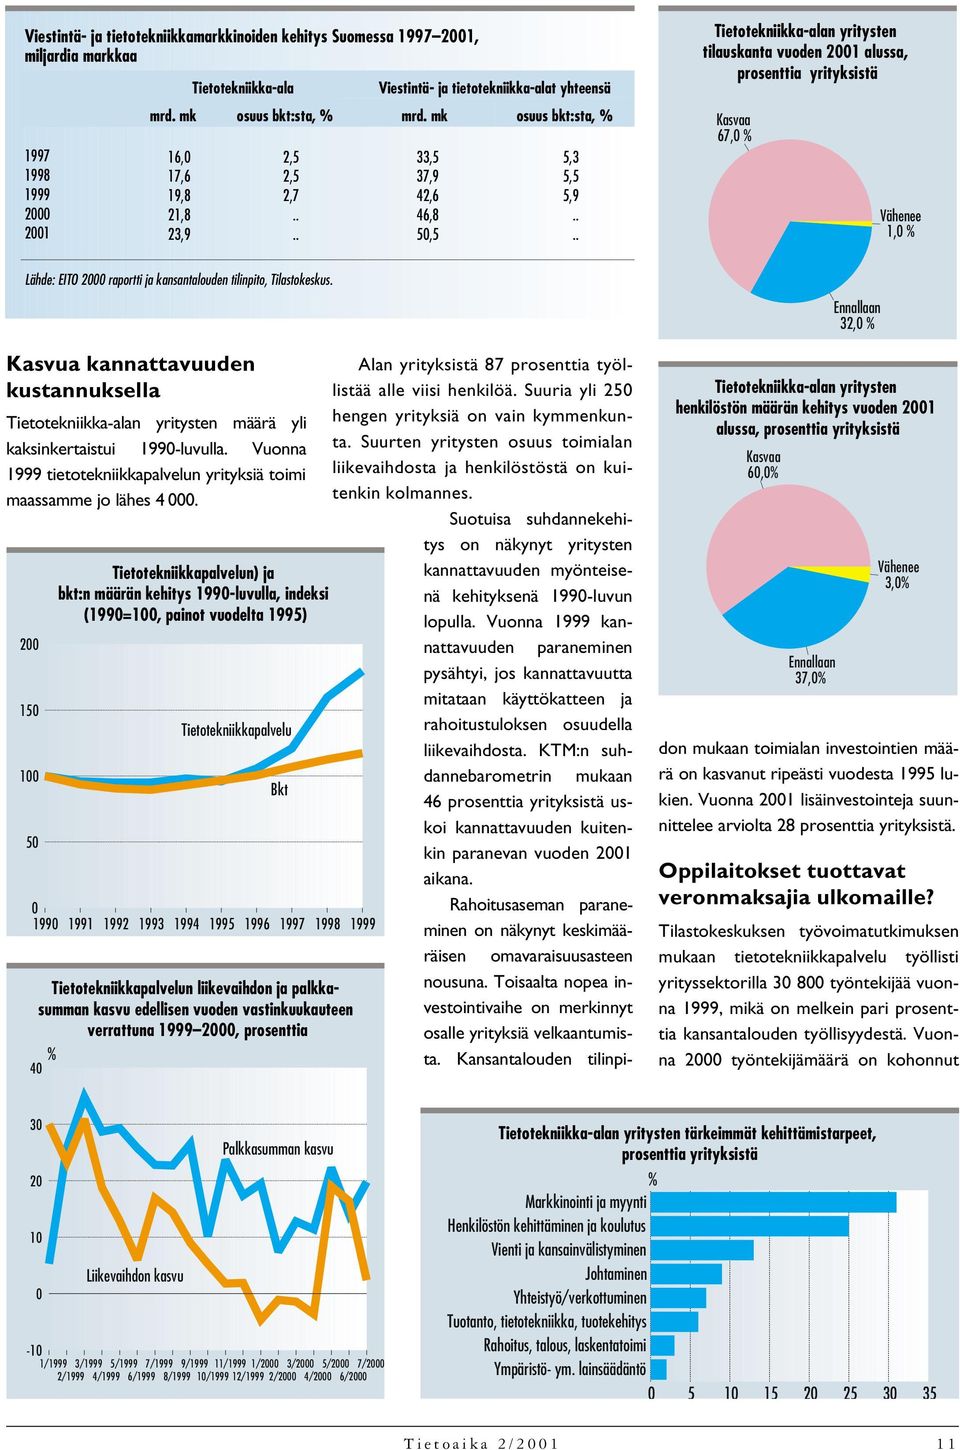 . Tietotekniikka-alan yritysten tilauskanta vuoden 2001 alussa, prosenttia yrityksistä Kasvaa 67,0 % Vähenee 1,0 % Lähde: EITO raportti ja kansantalouden tilinpito, Tilastokeskus.